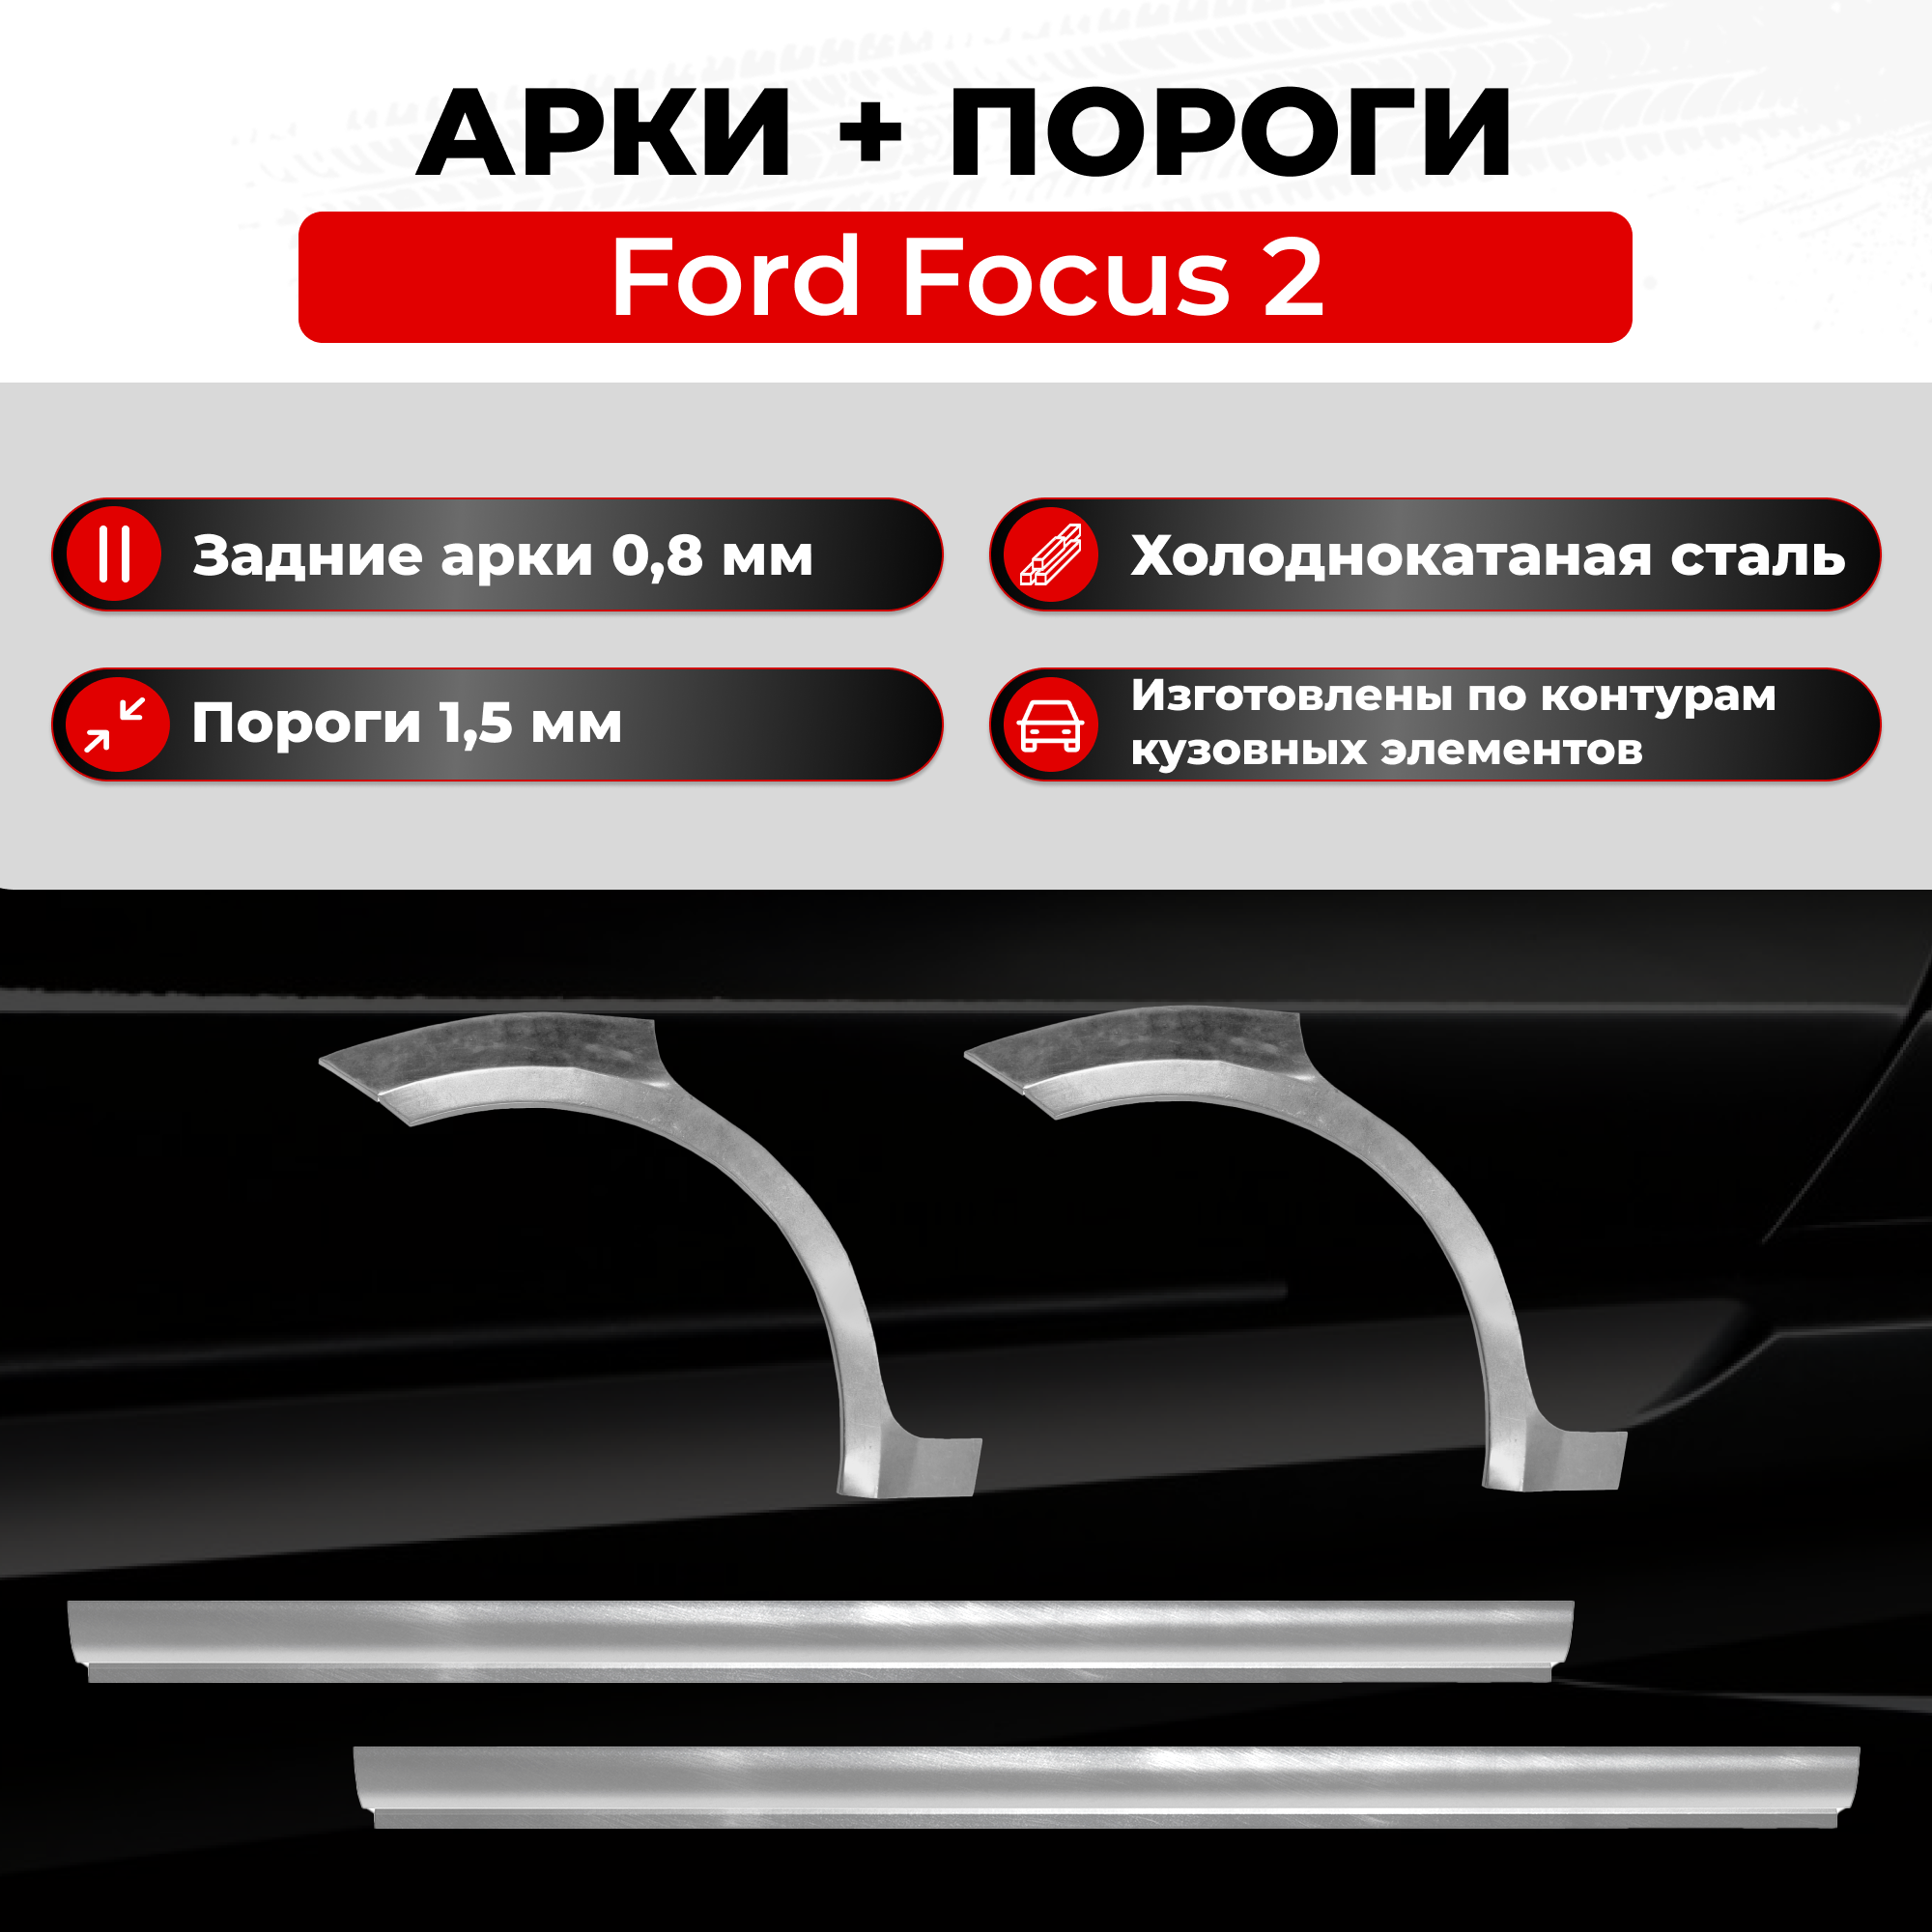 Ремонтные задние арки и полупороги (комплект) на Ford Focus 2 2005-2011 седан (Форд Фокус 2), холоднокатаная сталь 0.8 мм и 1.5 мм